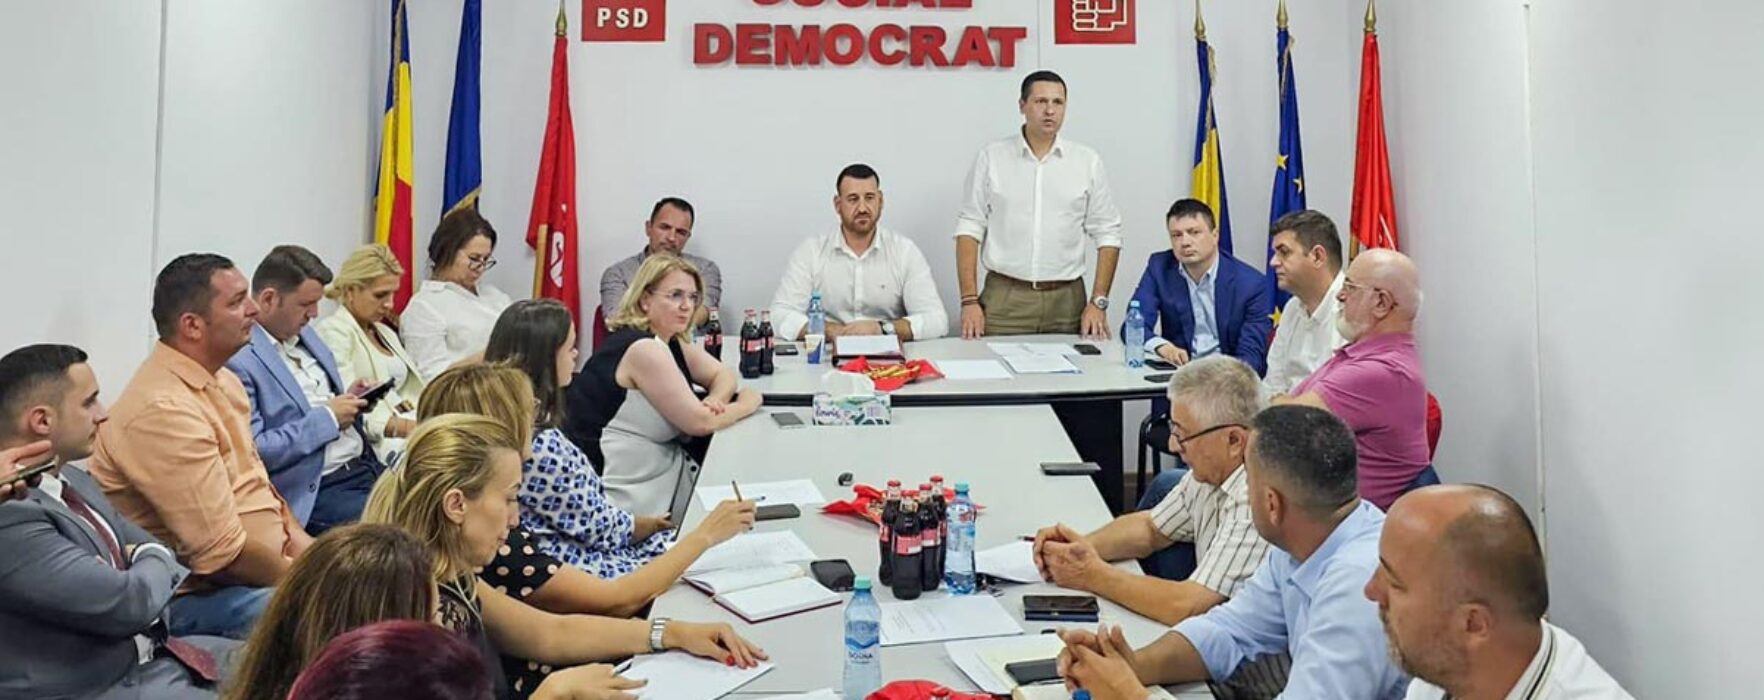 PSD Dâmboviţa, întâlnire cu membrii din Moreni: Proiectele propuse vor fi finalizate